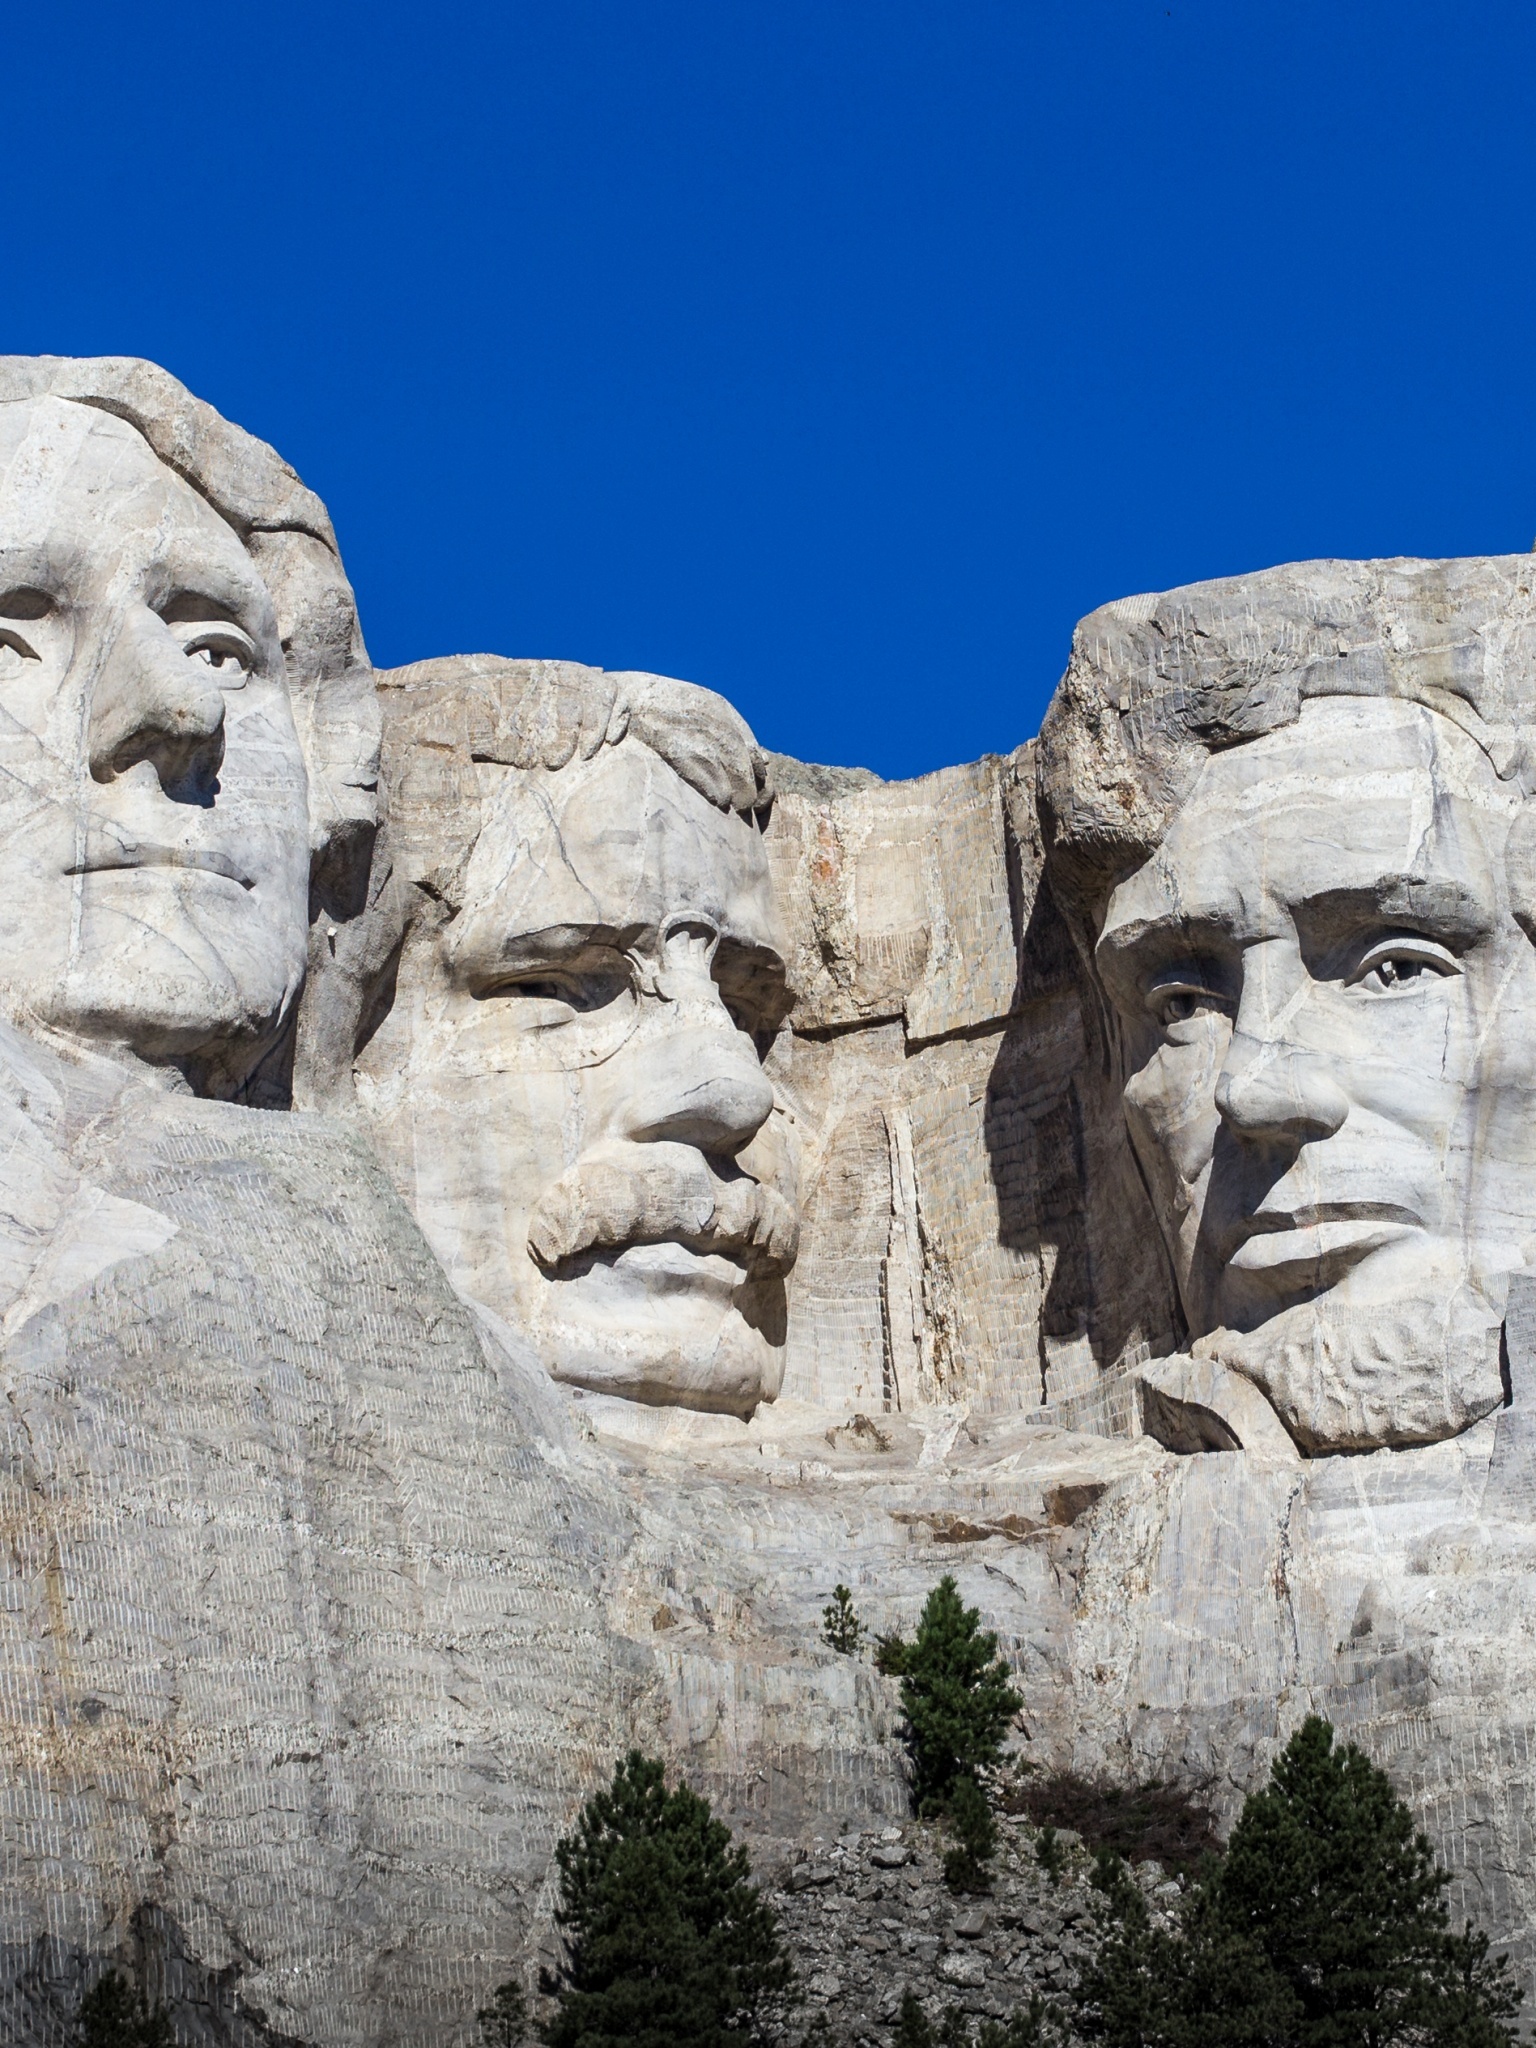 4K wallpaper, Presidents in stone, South Dakota beauty, Blue sky backdrop, 1540x2050 HD Phone